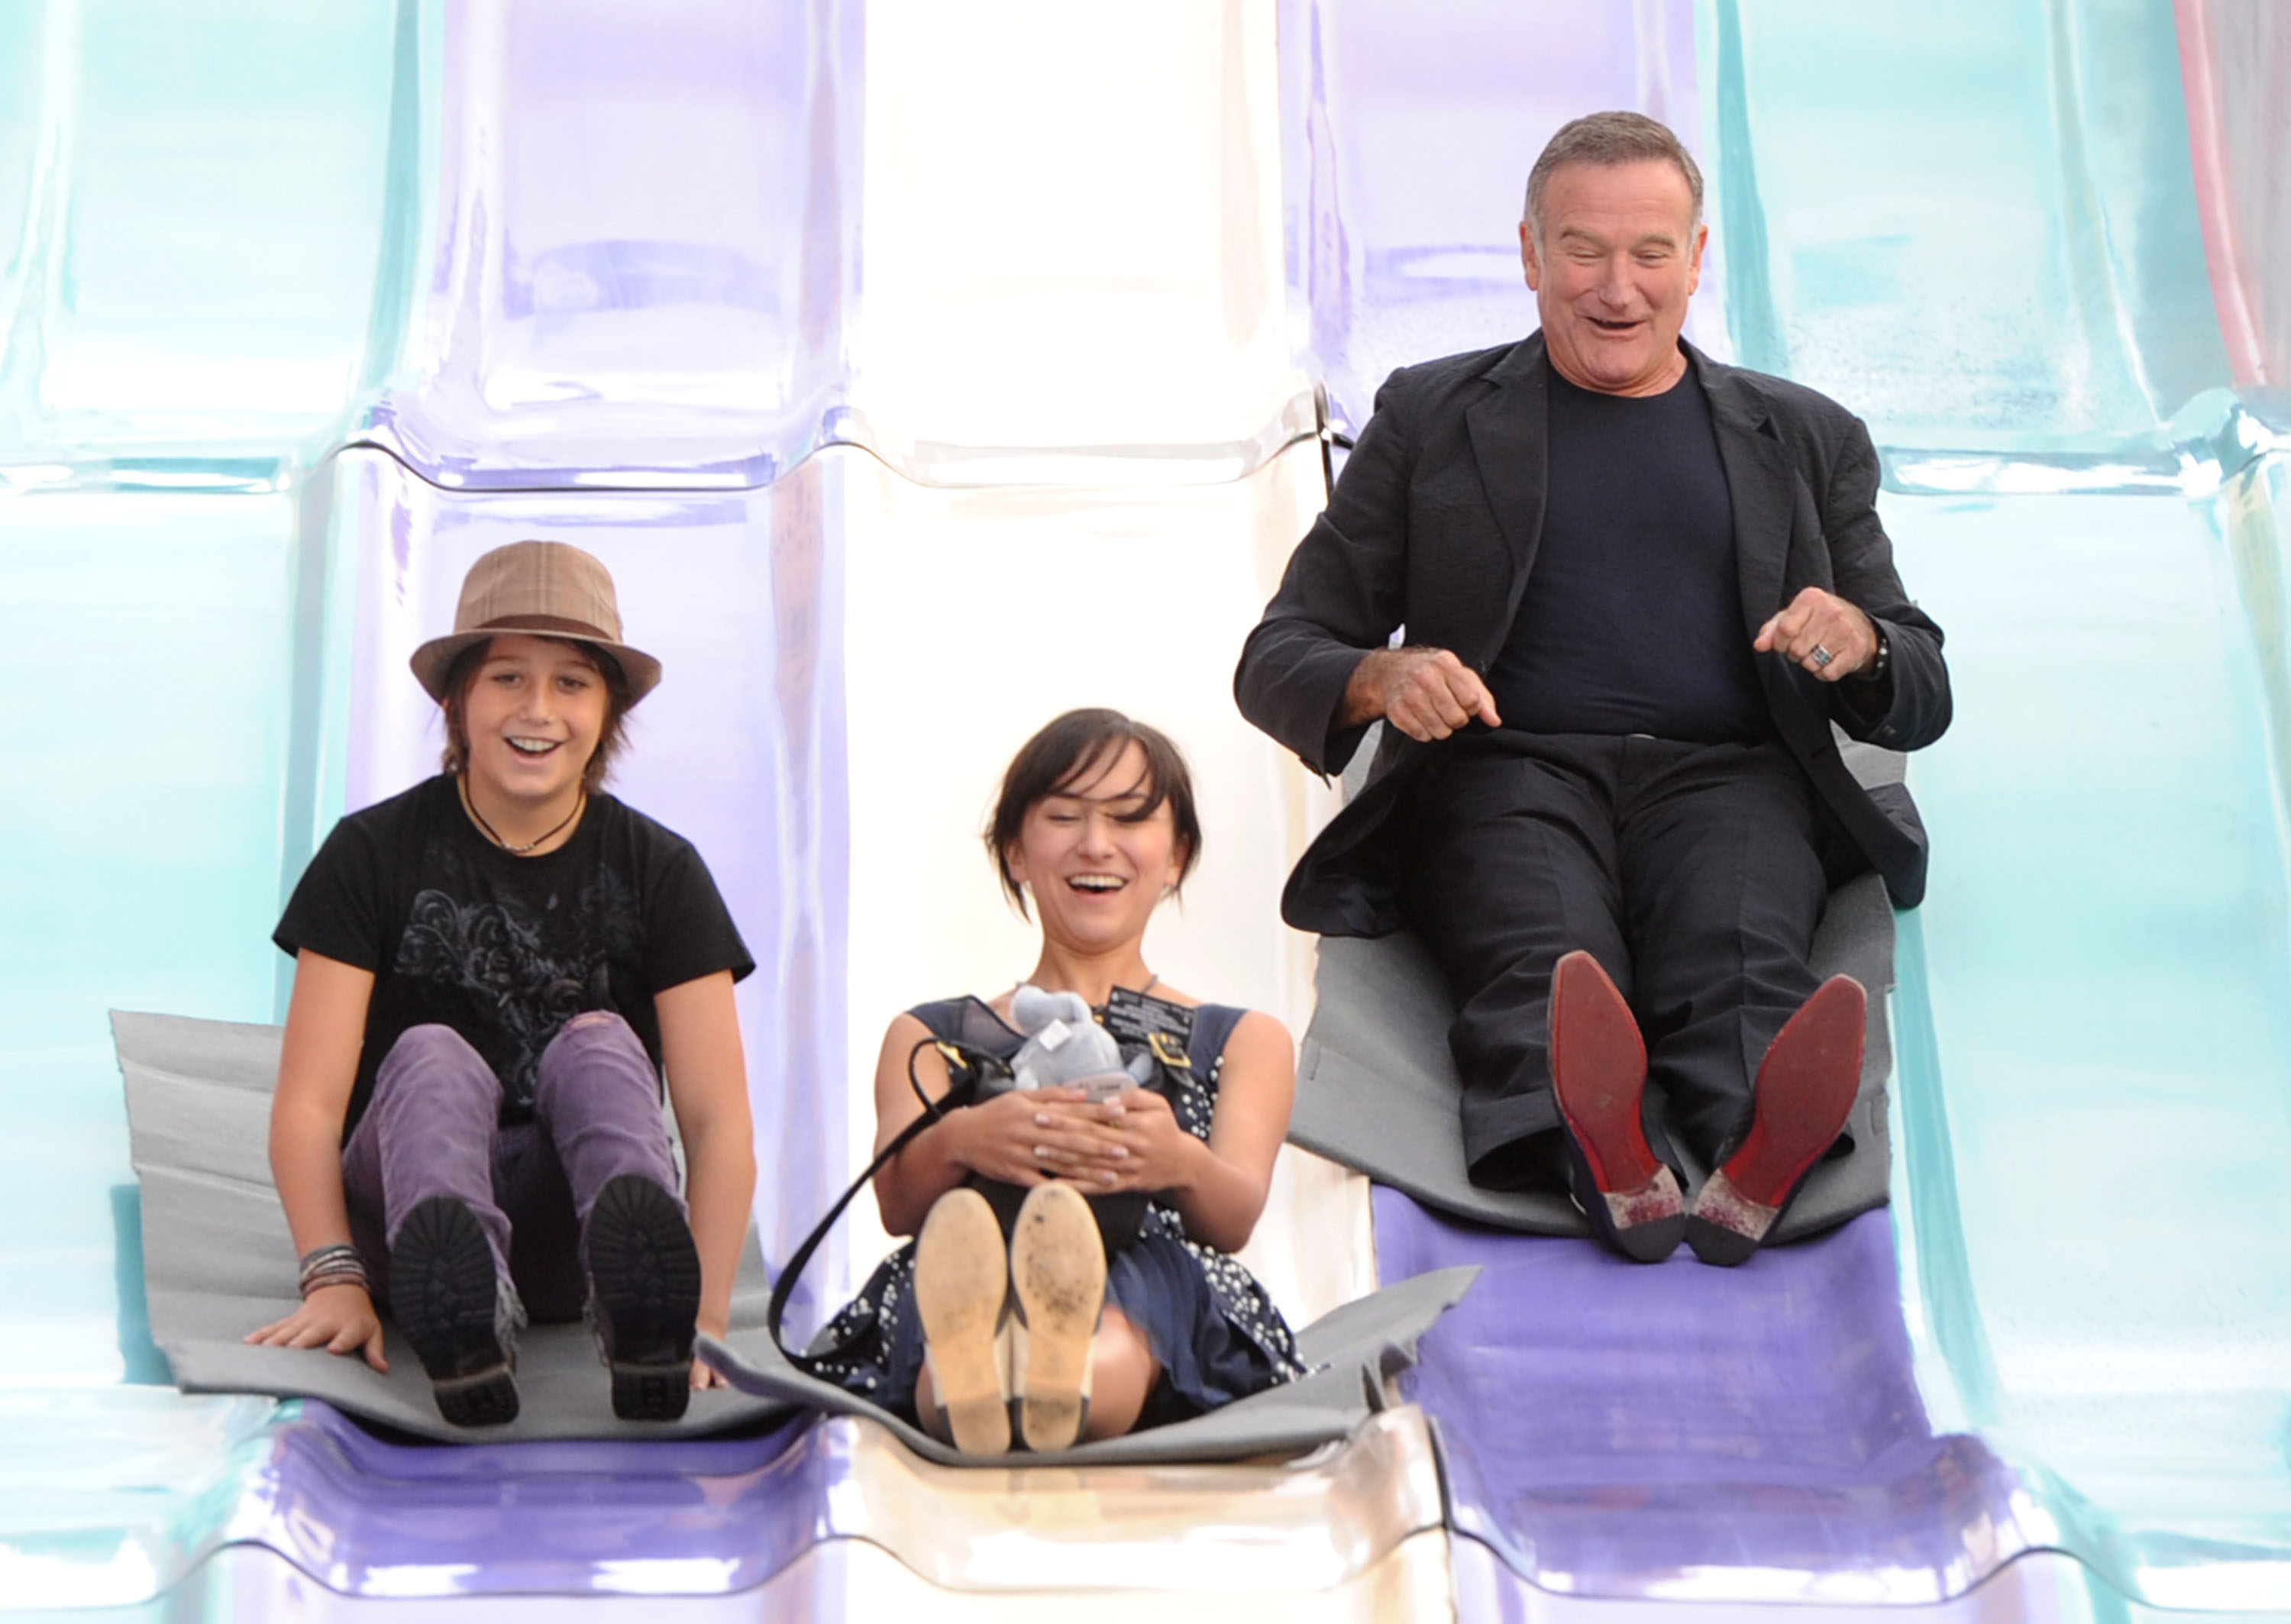 Milo Jacob Manheim, l'actrice Zelda Williams et l'acteur Robin Williams assistent à la première de "Happy Feet 2" produit par Warner Bros au Grauman's Chinese Theatre le 13 novembre 2011 à Hollywood, Californie. | Source : Getty Images